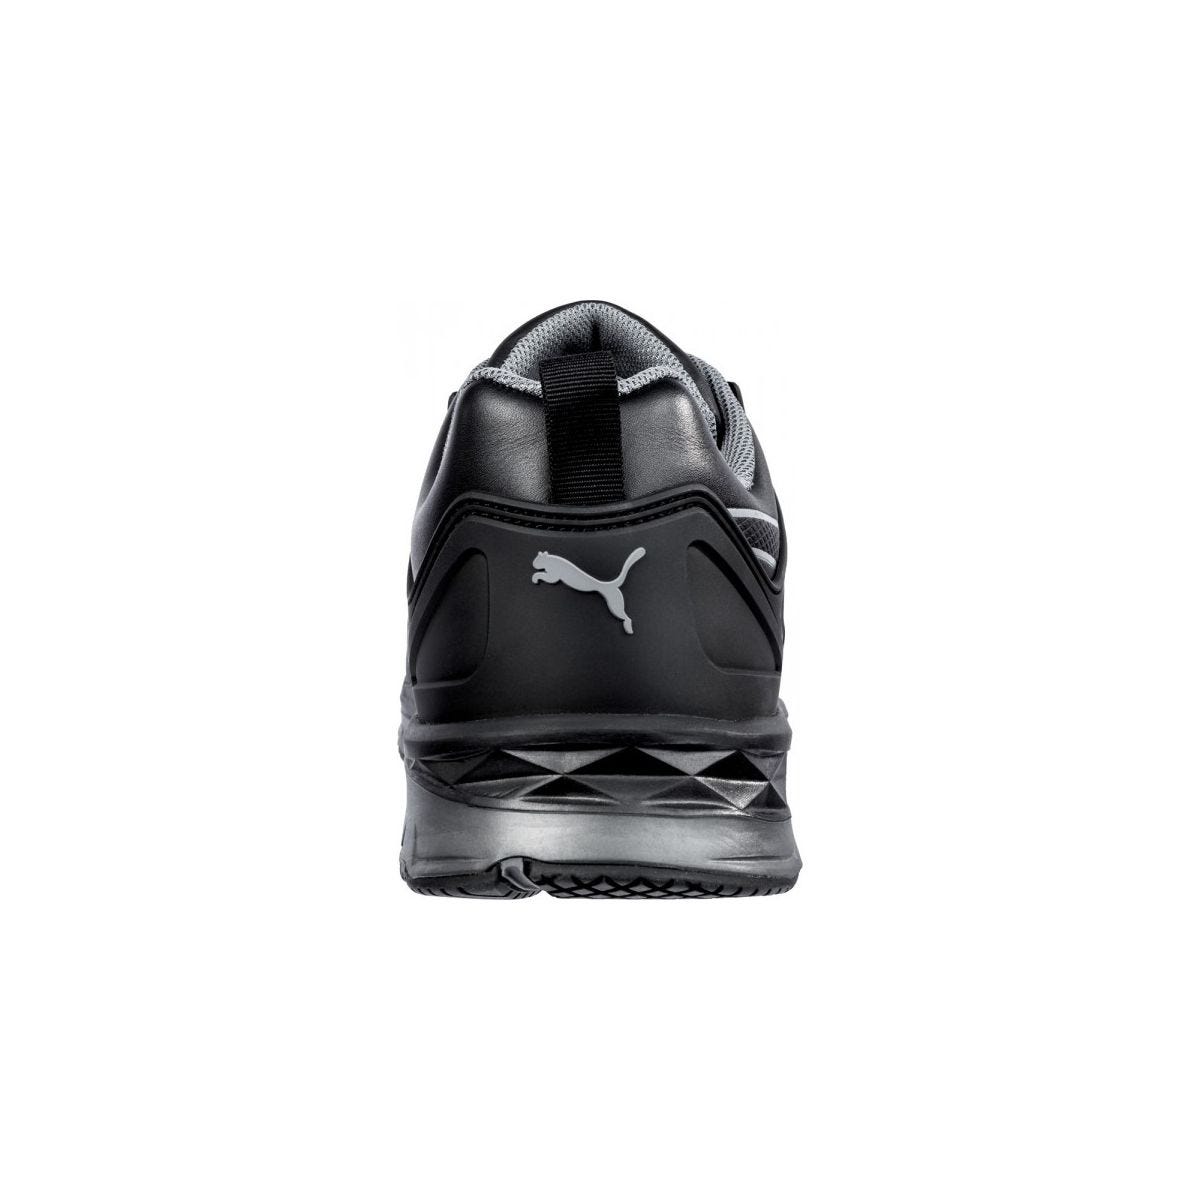 Chaussures de sécurité Velocity 2.0 Noir Low S3 - Puma - Taille 41 1